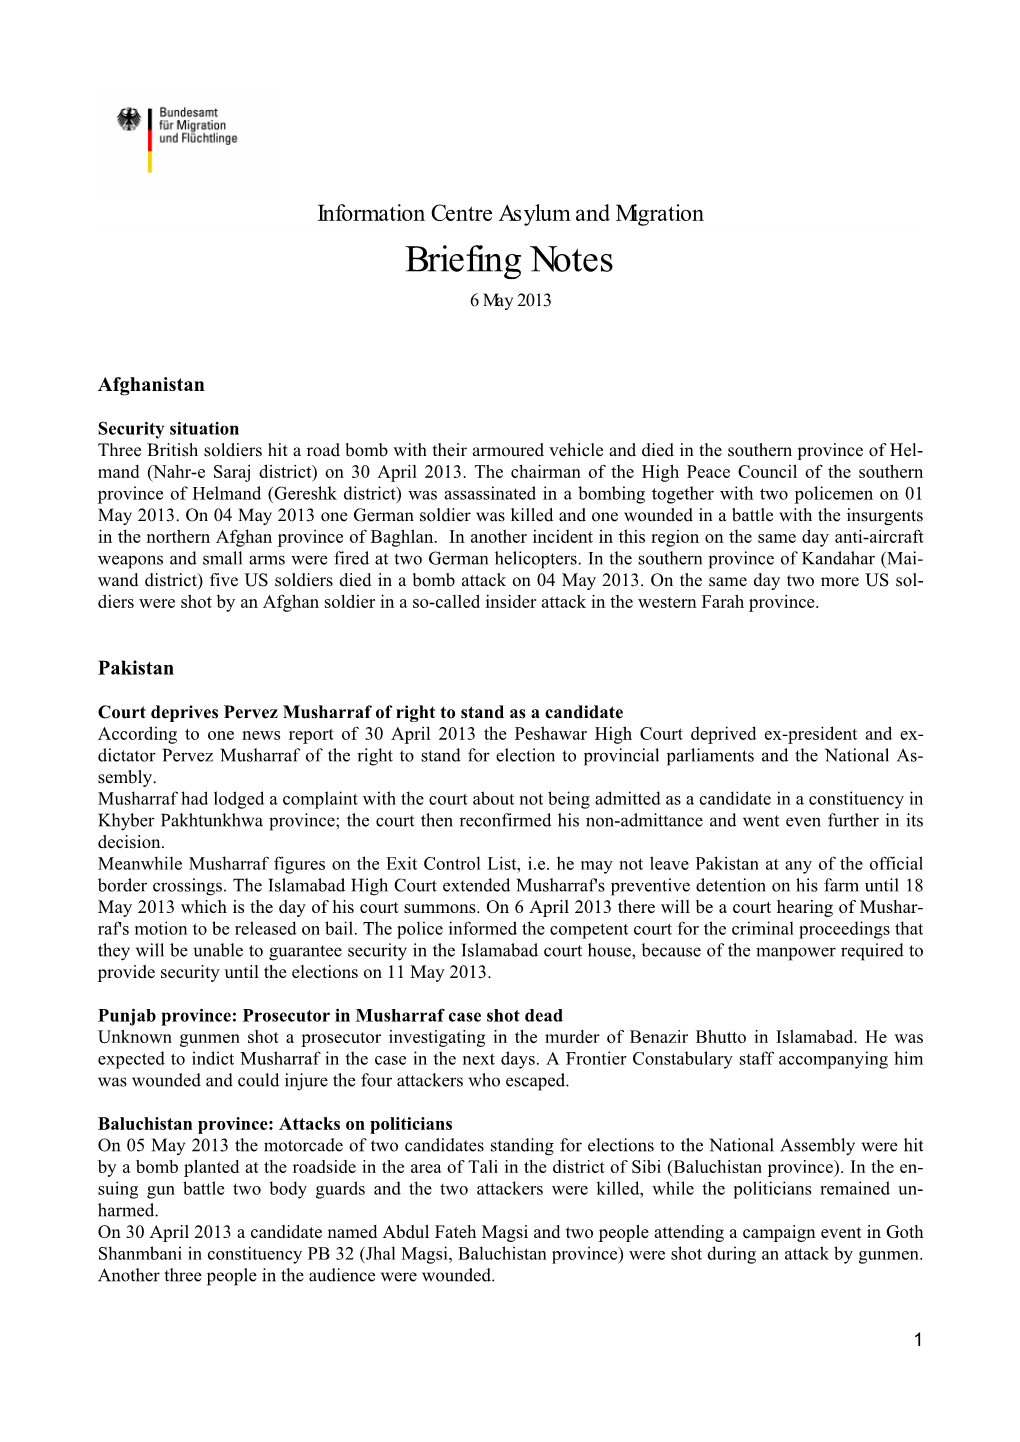 Briefing Notes 6 May 2013